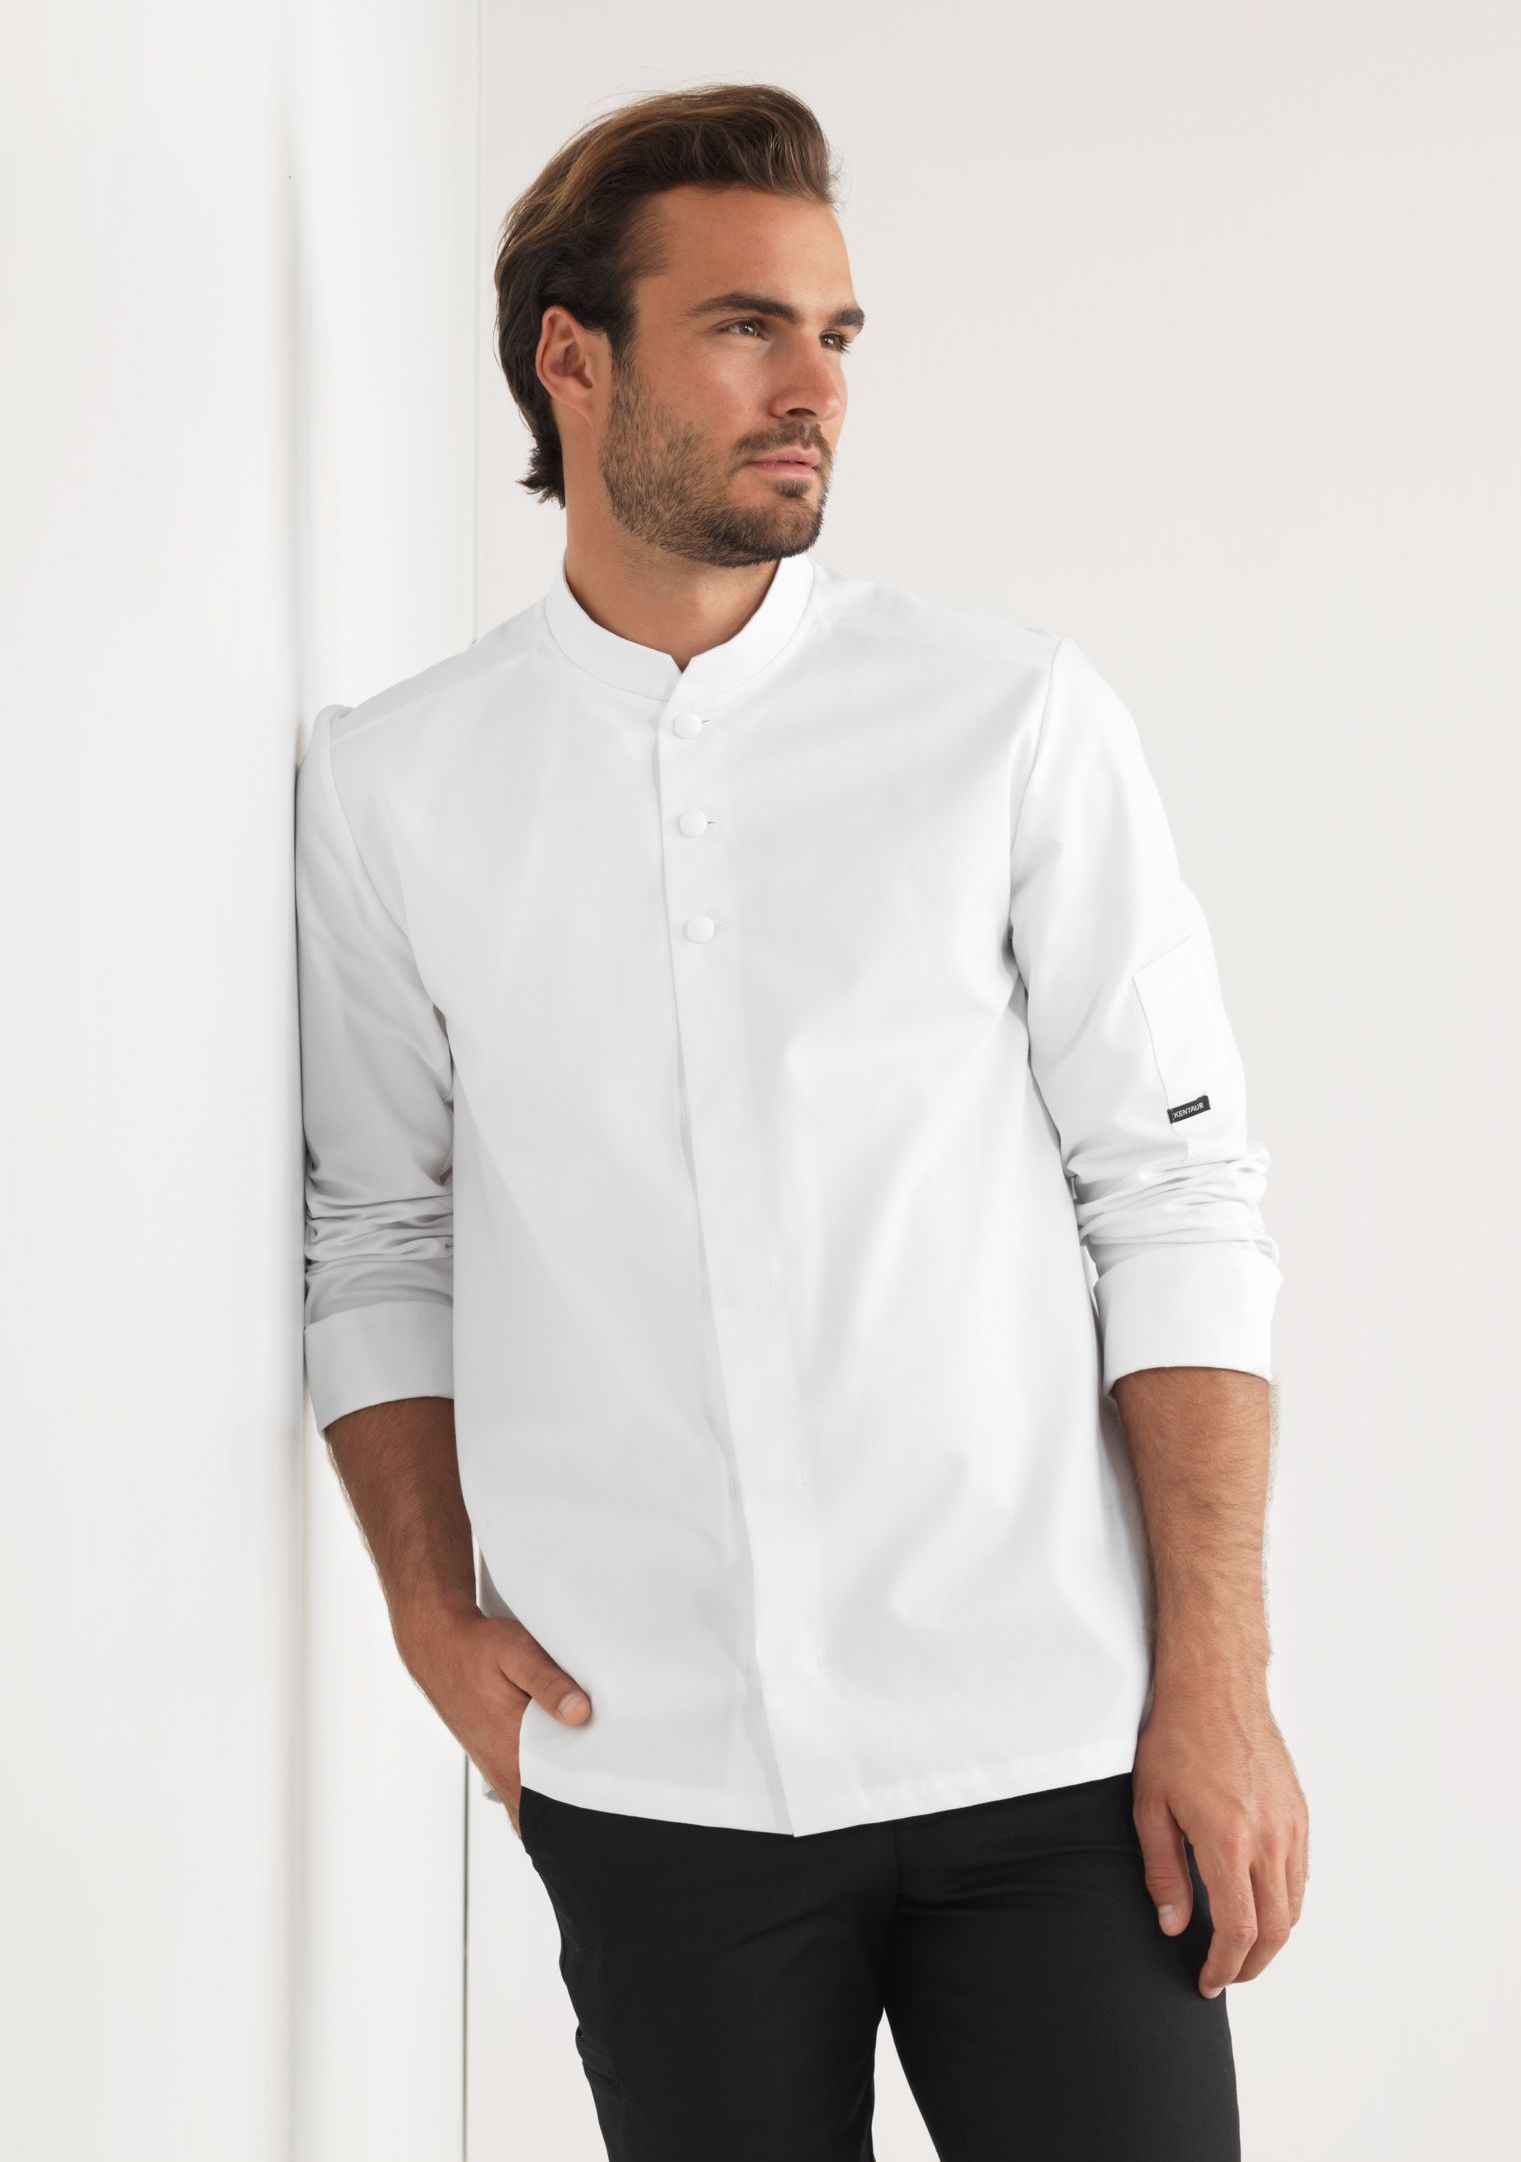 Unisex Küchenchef Stehkragen Shirt Button Langarm Kochjacken Arbeitskleidung Top 